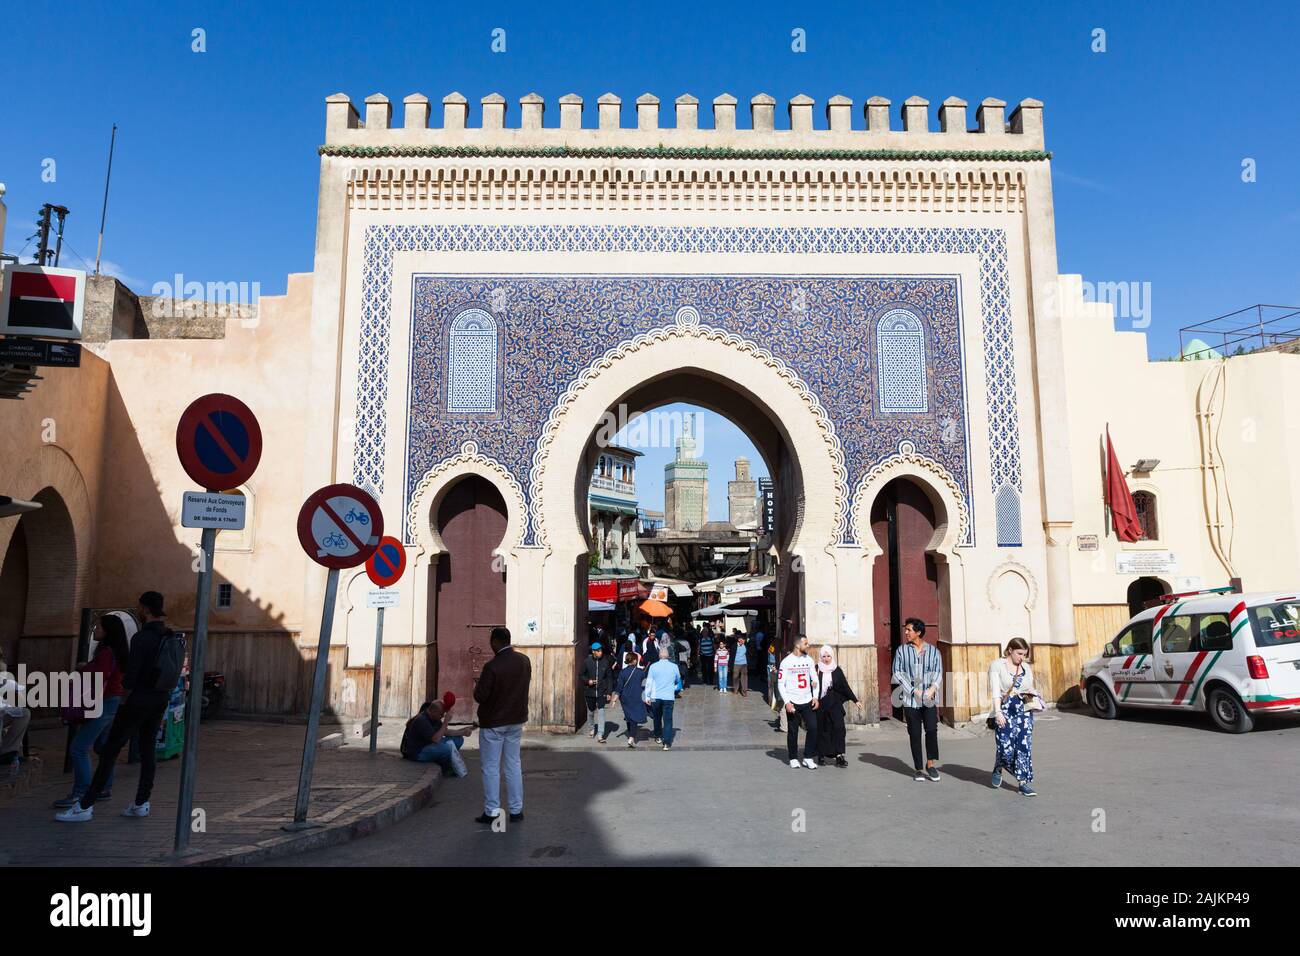 Paysage urbain dans la région de Bab Bou Jeloud (également connu sous le nom de Bab Abi al-Jounoud) – la magnifique porte de la ville de Fes (Fez), au Maroc Banque D'Images